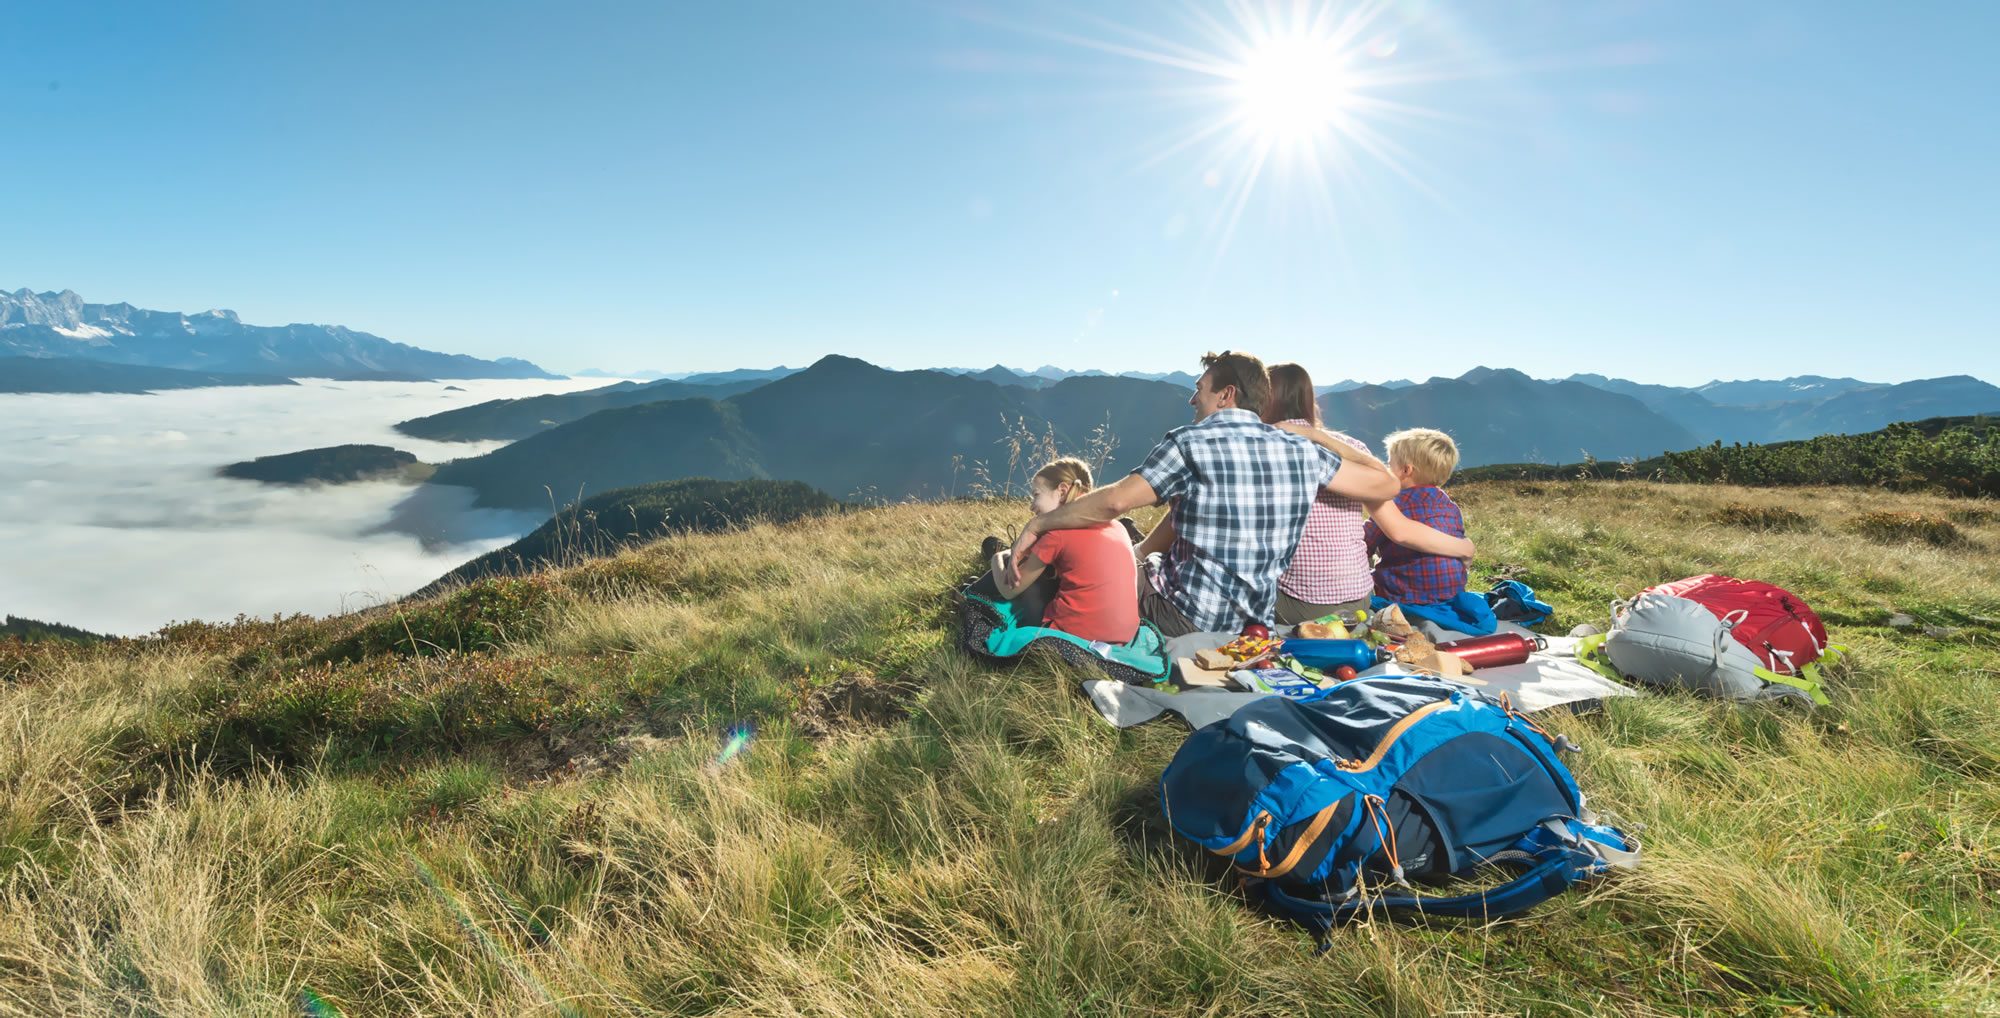 Traumhafter Sommerurlaub in Flachau mitten im Salzburgerland - optimal für Familien, Aktivurlaub und Genießer